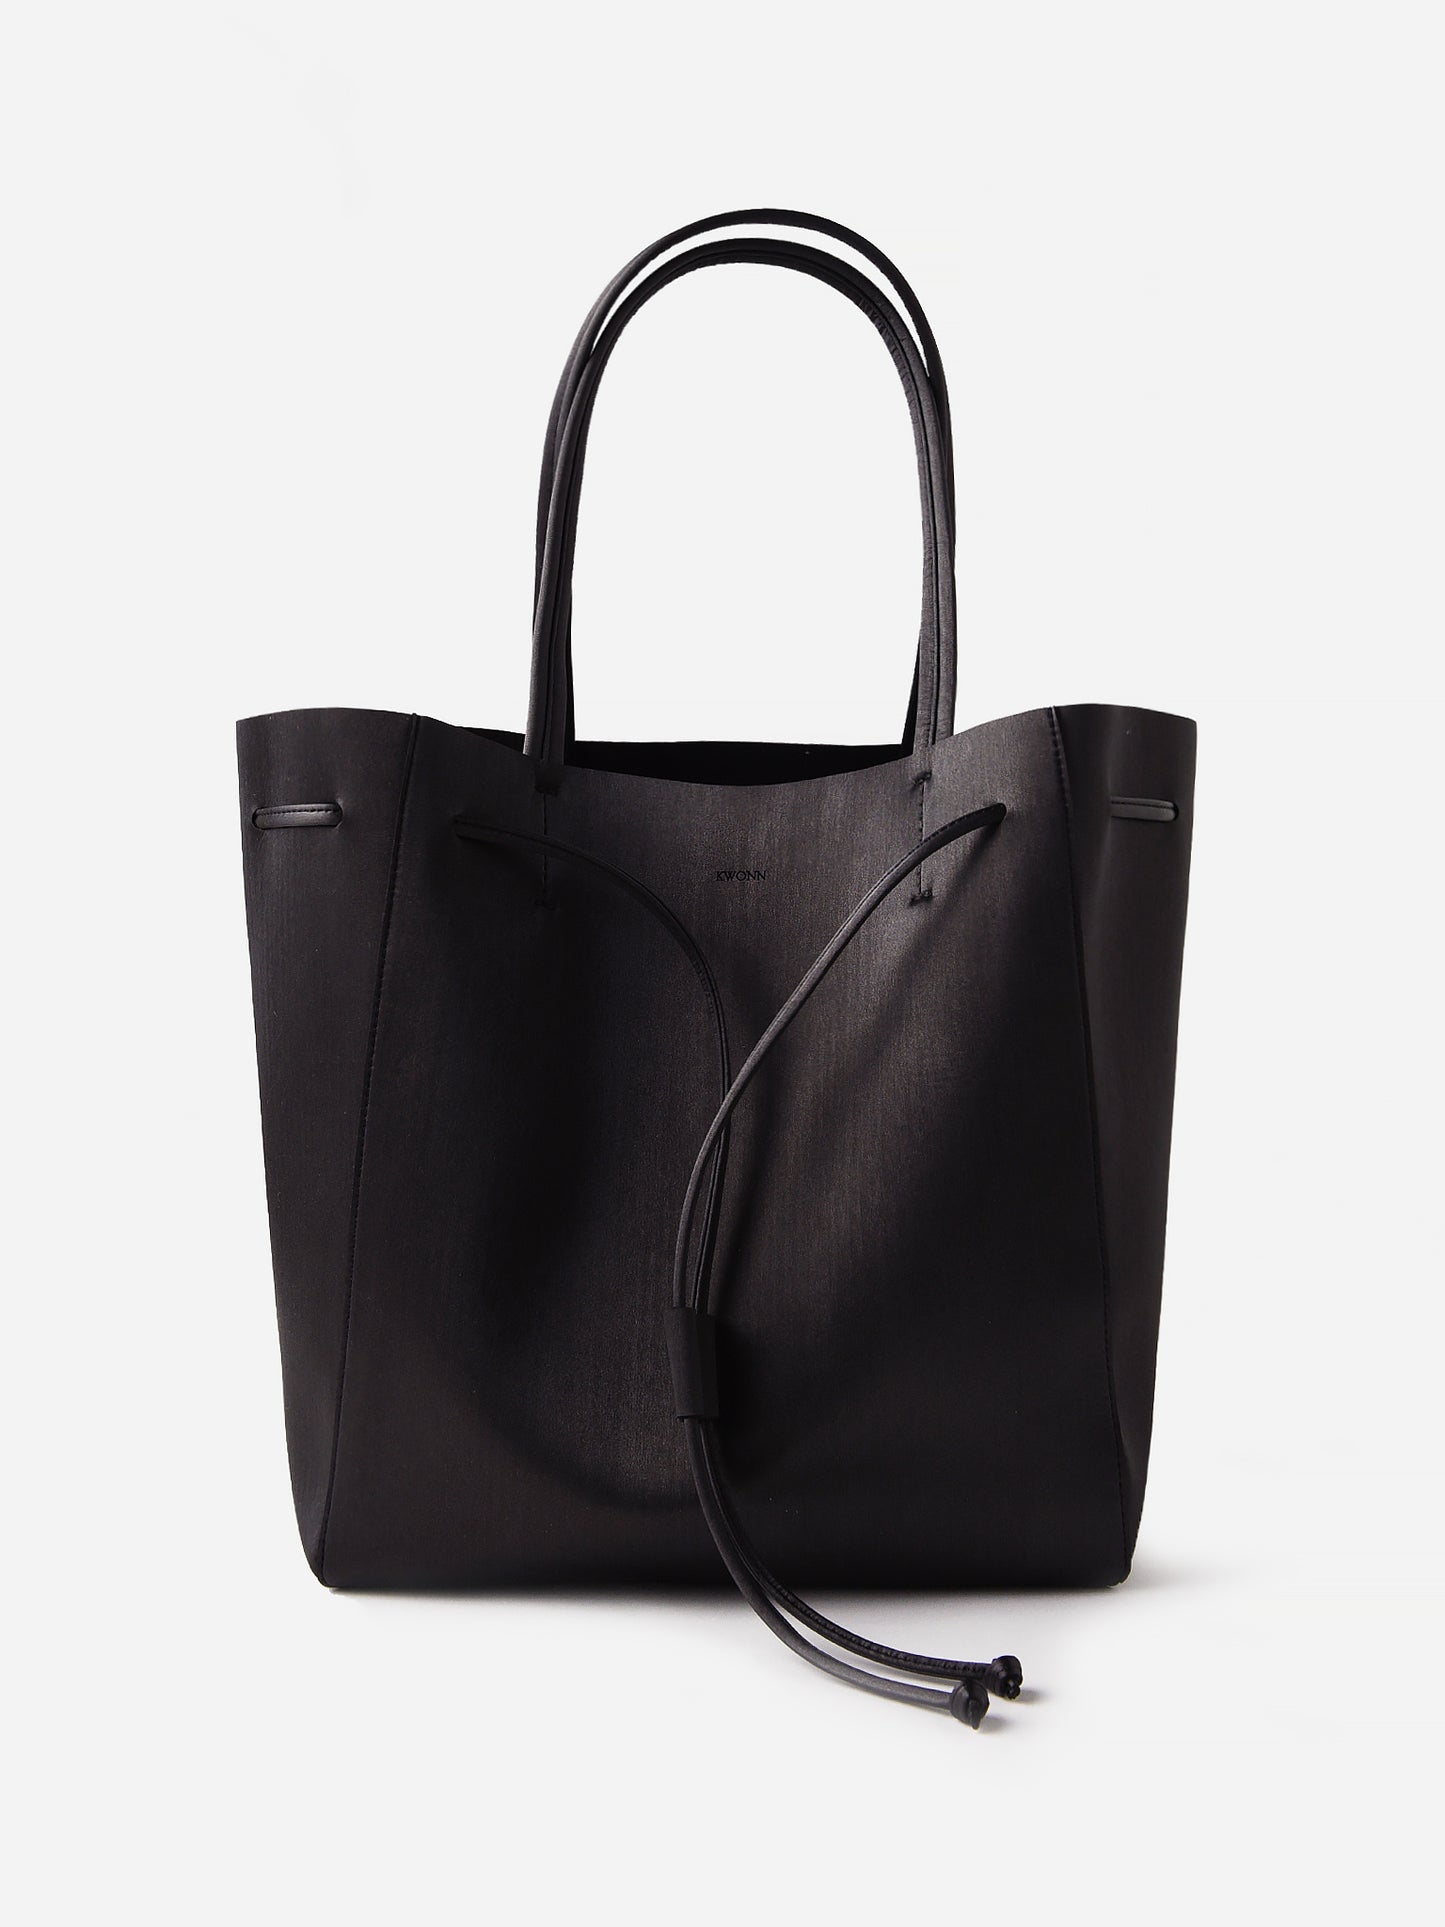 Kwonn Women's Shopper Bag